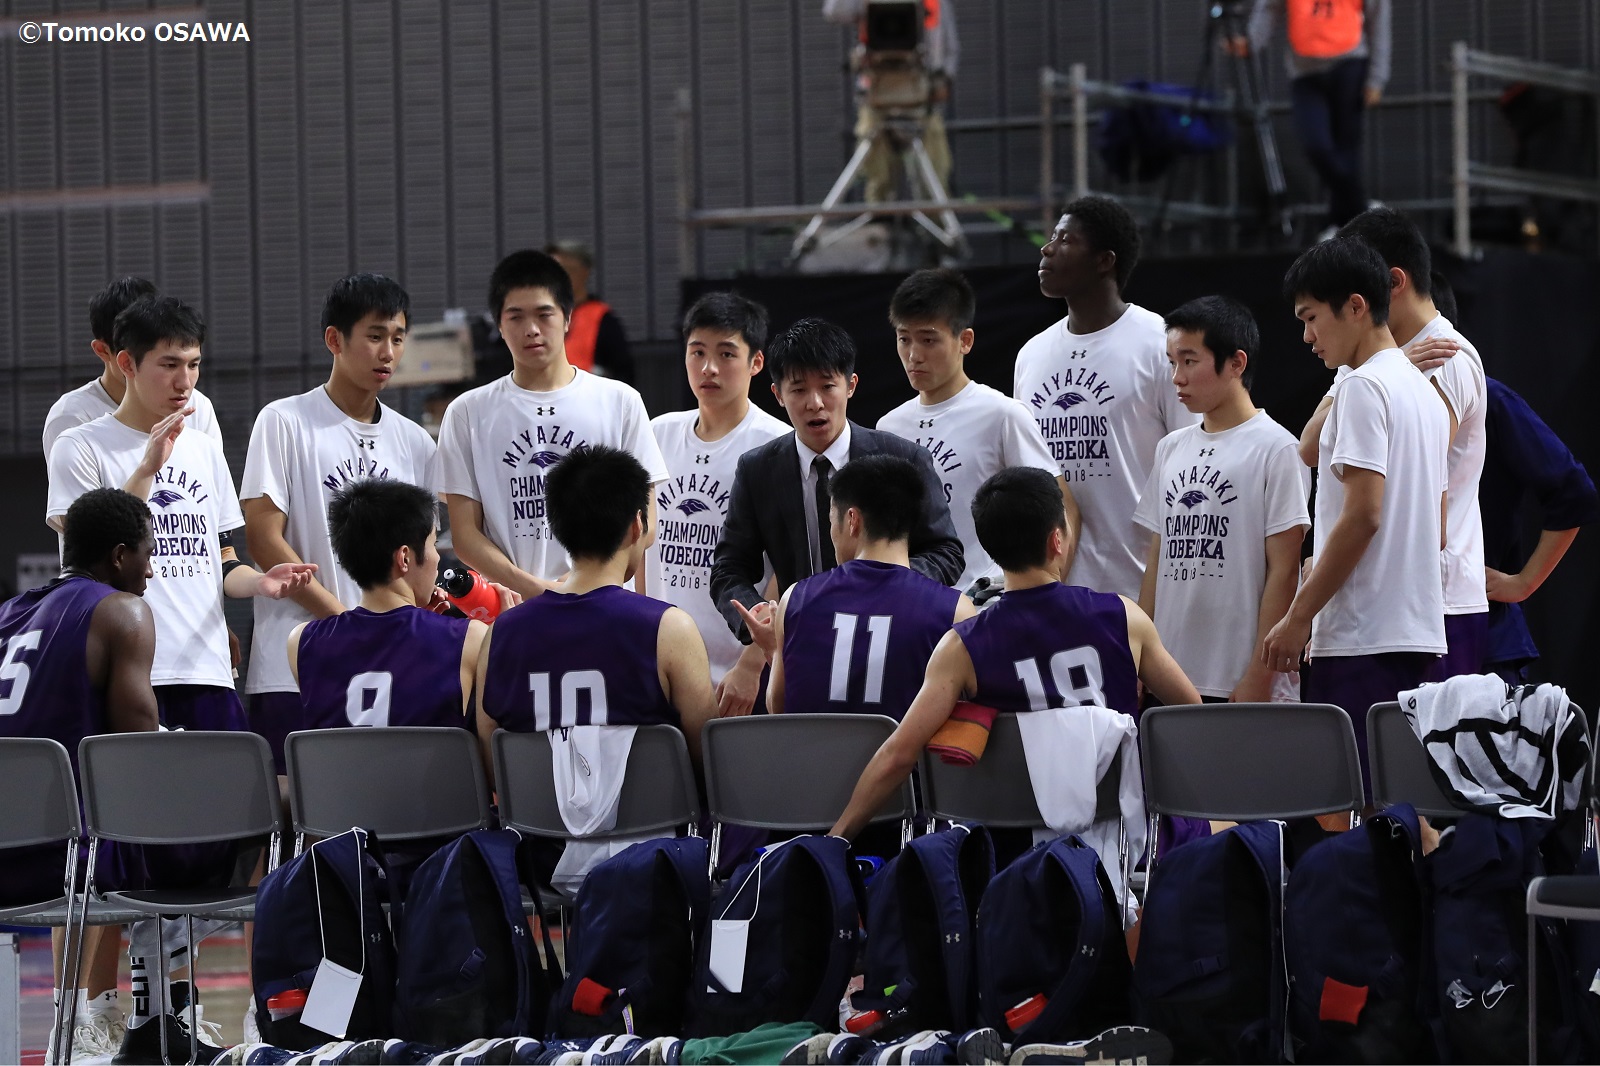 延岡学園の楠元コーチが語る母校と恩師への想い 夢は渡邊雄太のような選手を育てること バスケットボールキング